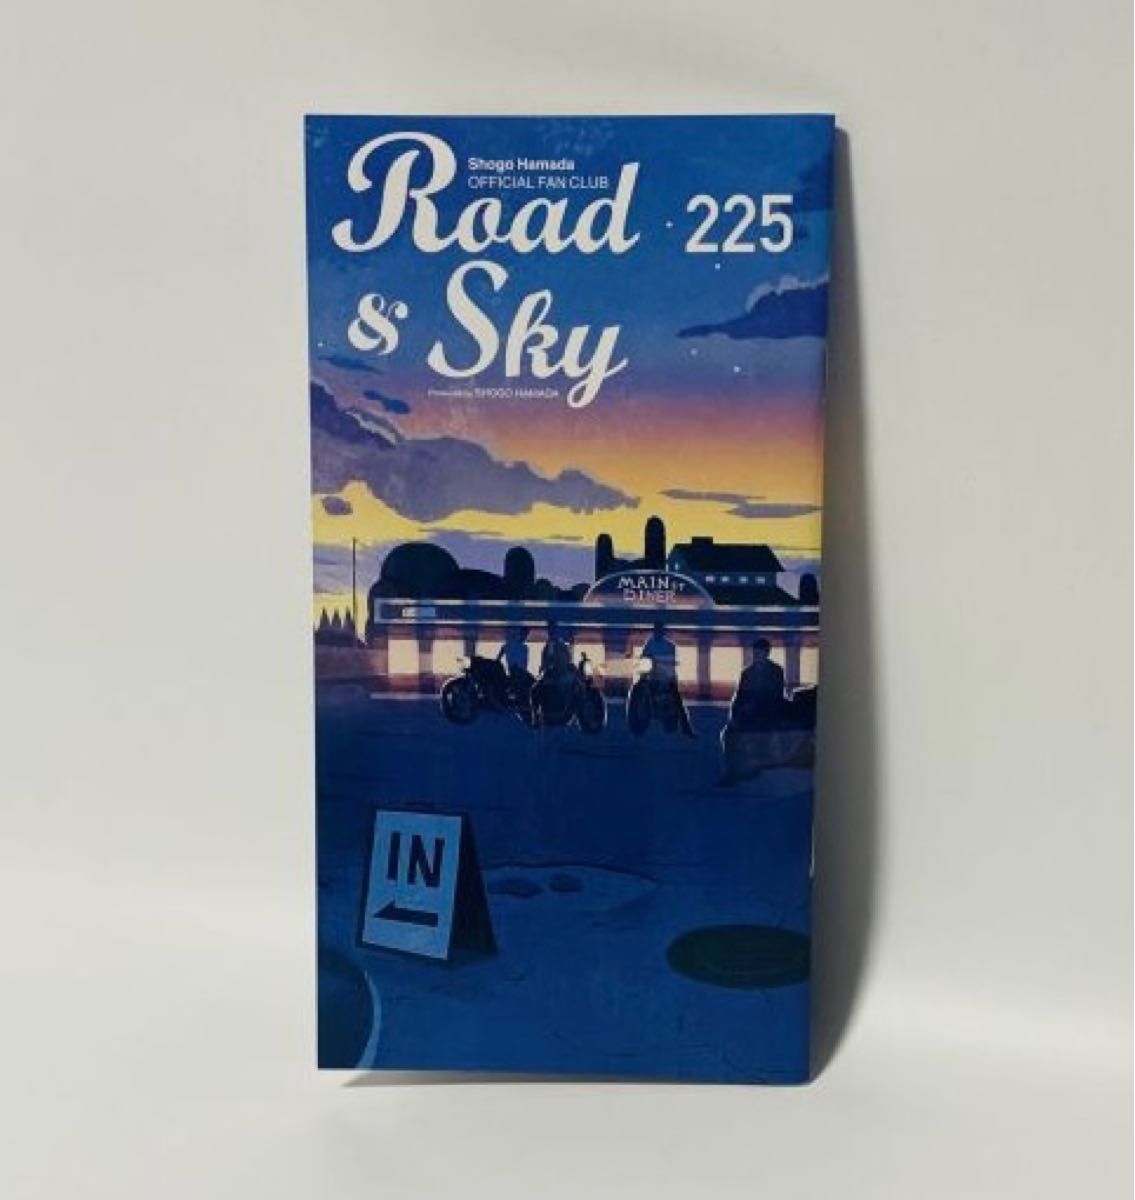 浜田省吾 ファンクラブ会報/FC会報「Road&Sky No.225」